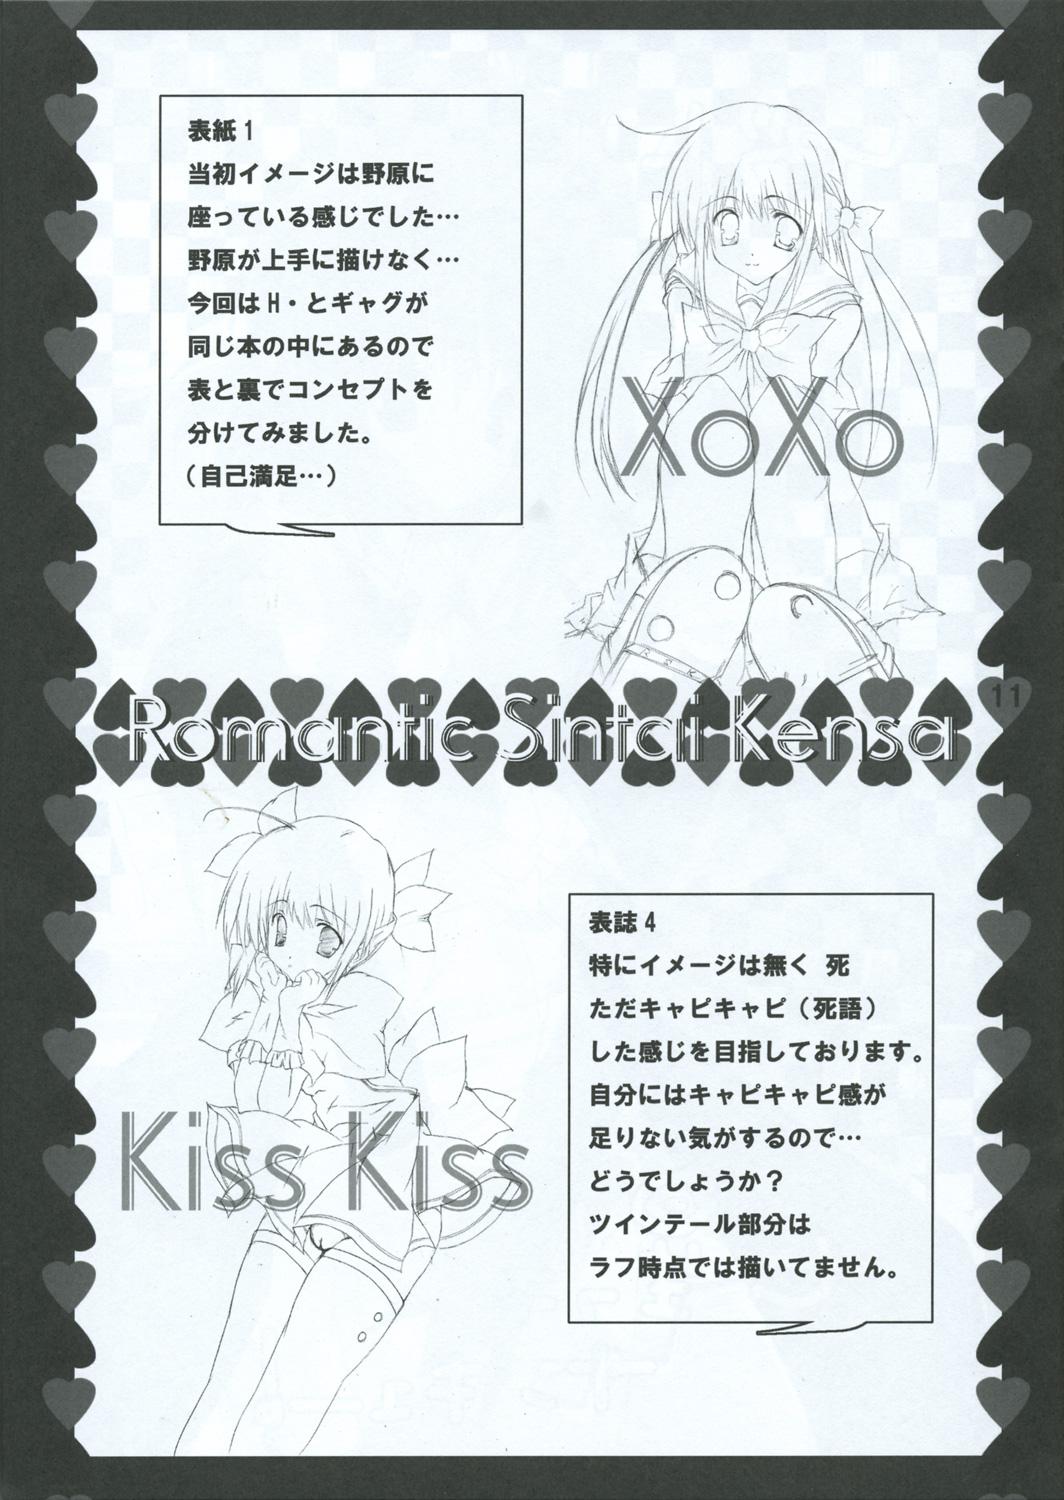 Xxx XoXo/kiss kiss - Hayate no gotoku Amateurs Gone - Page 11